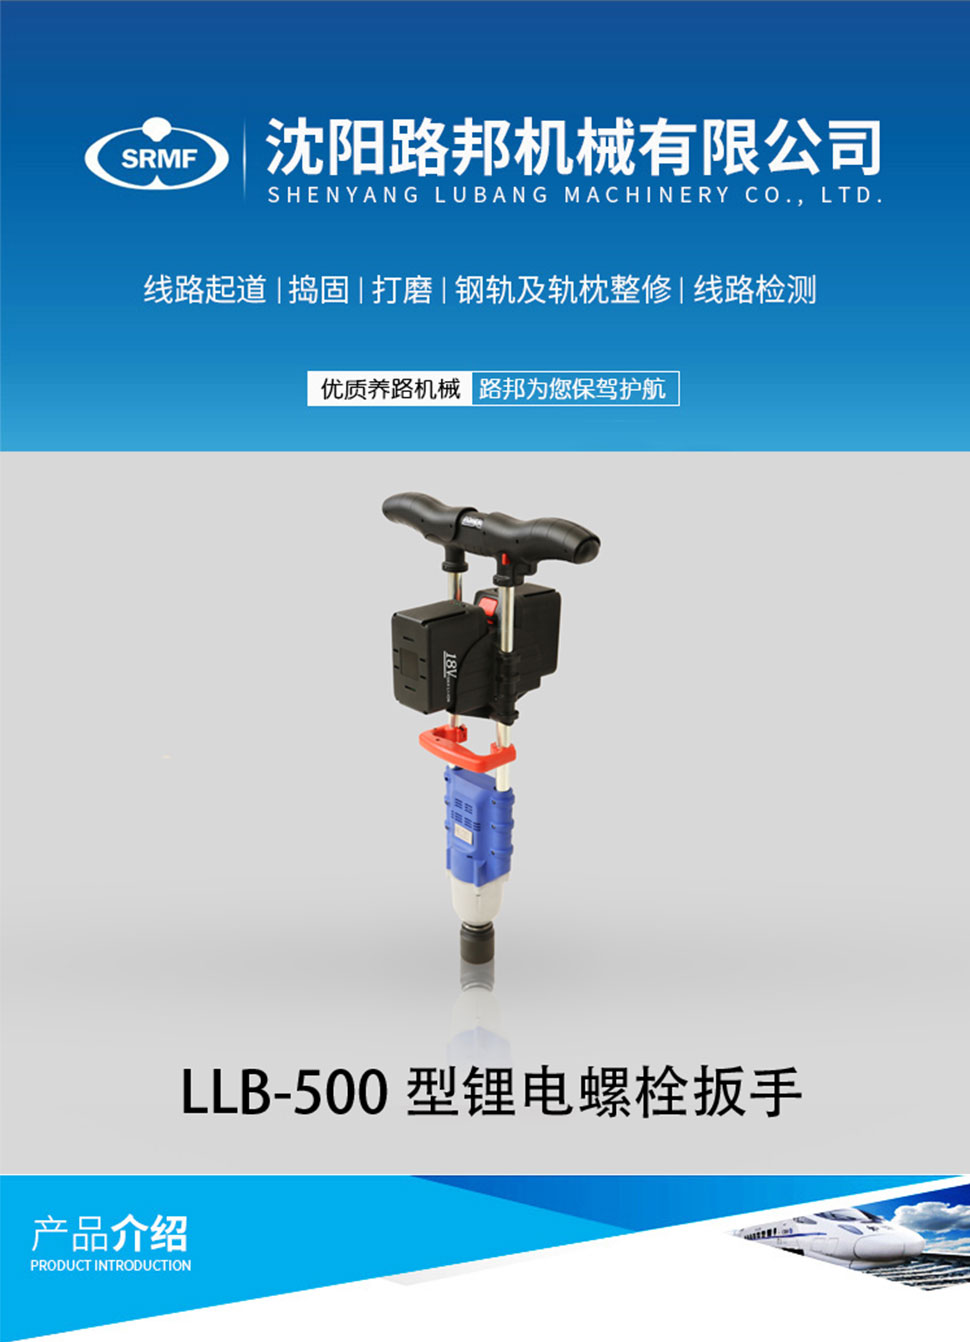 LLB-500型鋰電螺栓扳手